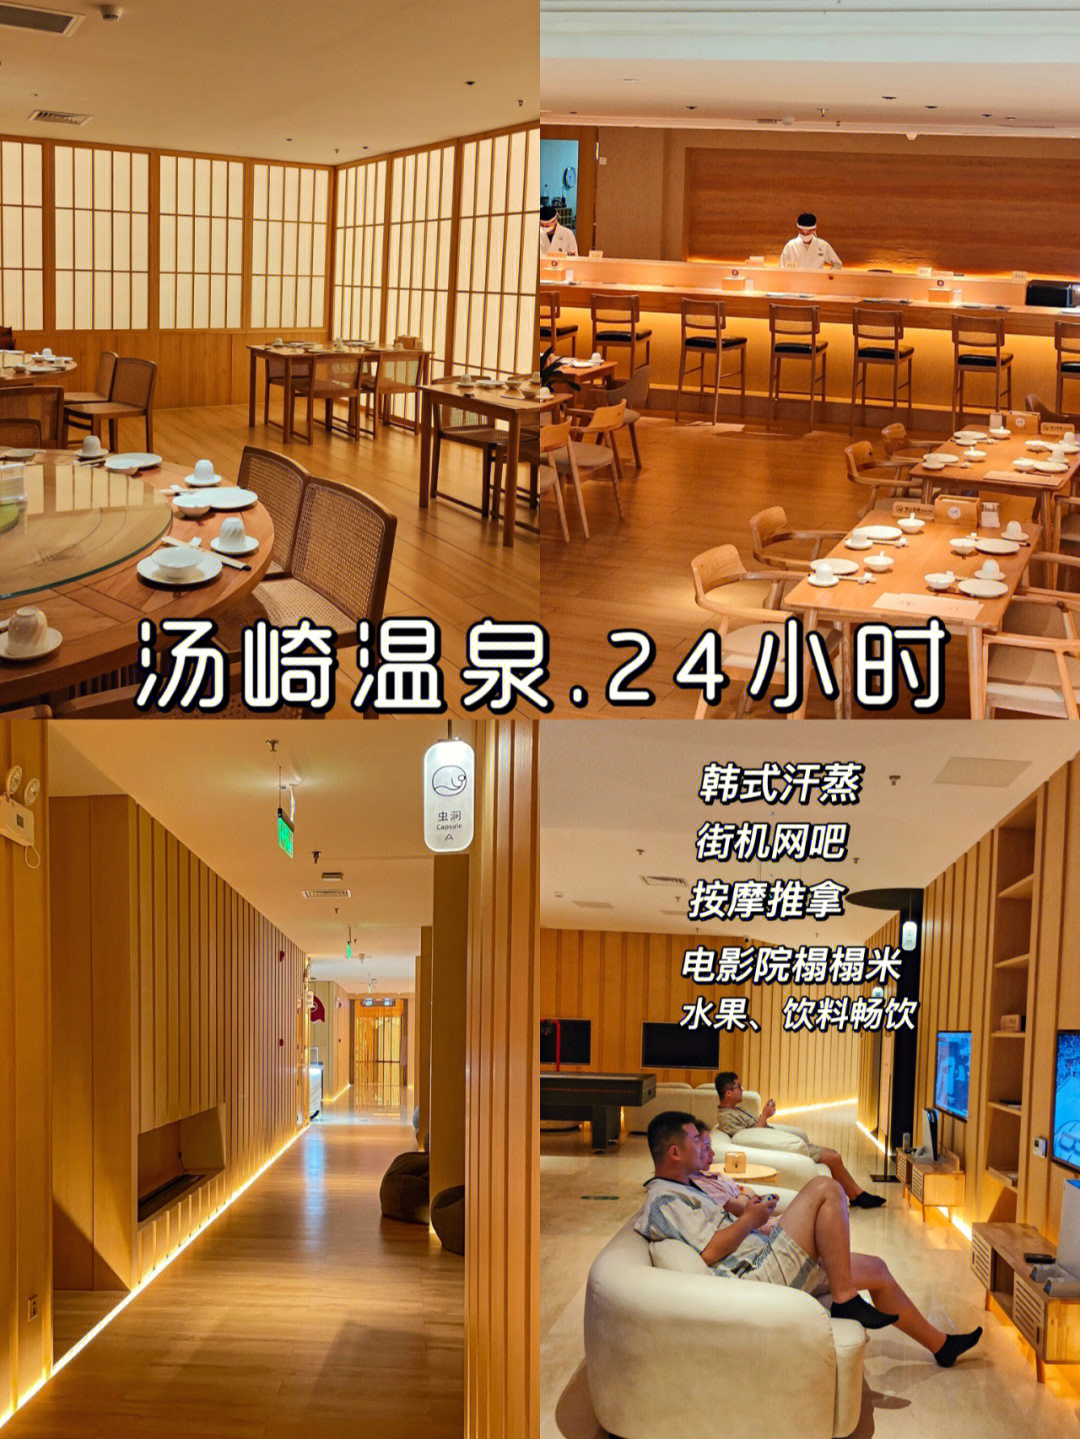 93这里简直就是打工人的放松乐园,是深圳首家日式轻奢汤泉文化馆